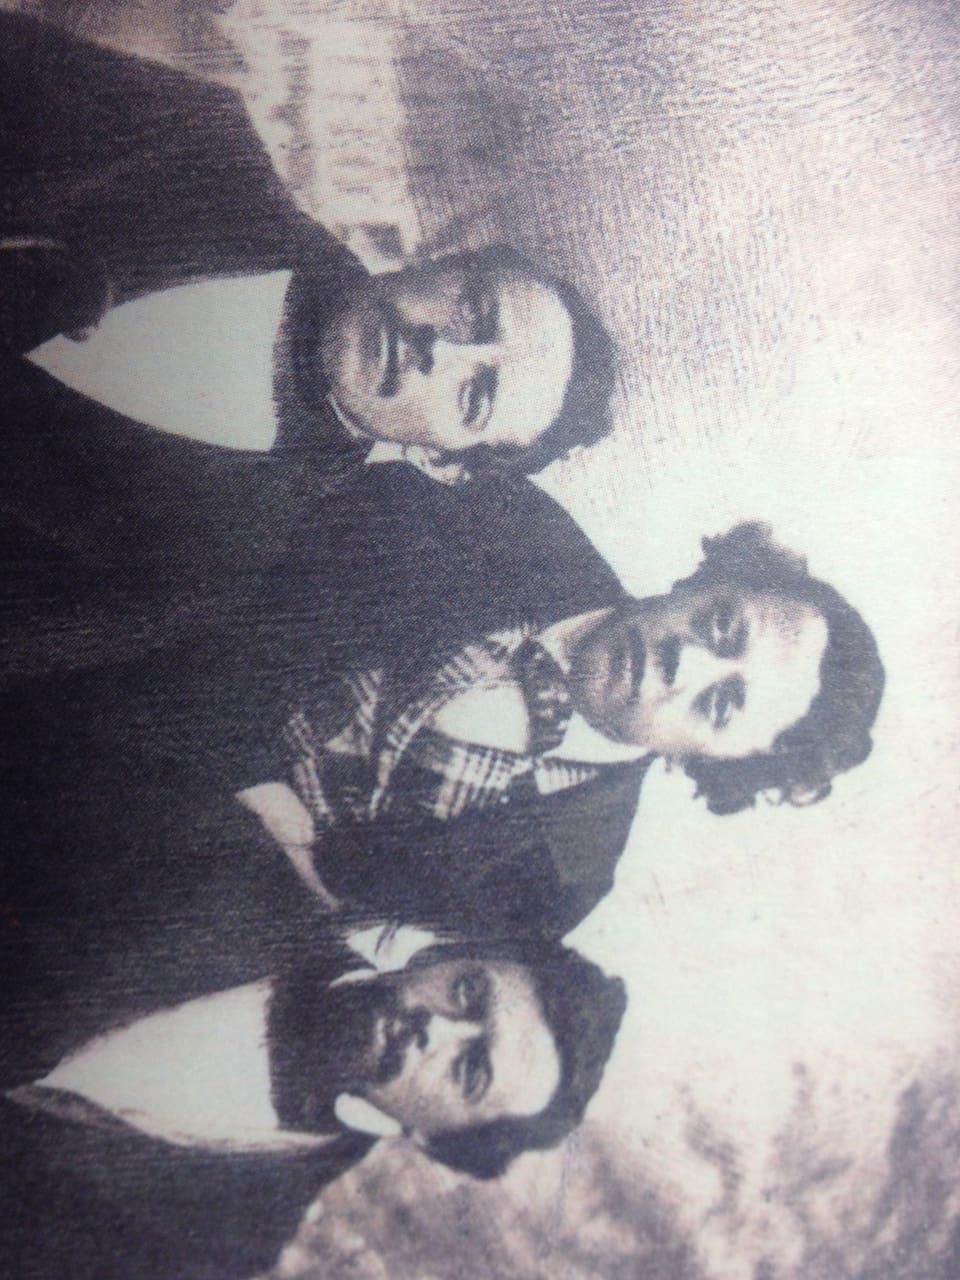 Die drei Brüder Xaver (1824 - 1907), Bonifaz (1819 - 1852) und Gustav Suter (1828 - 1891). Fotografie um 1848. 